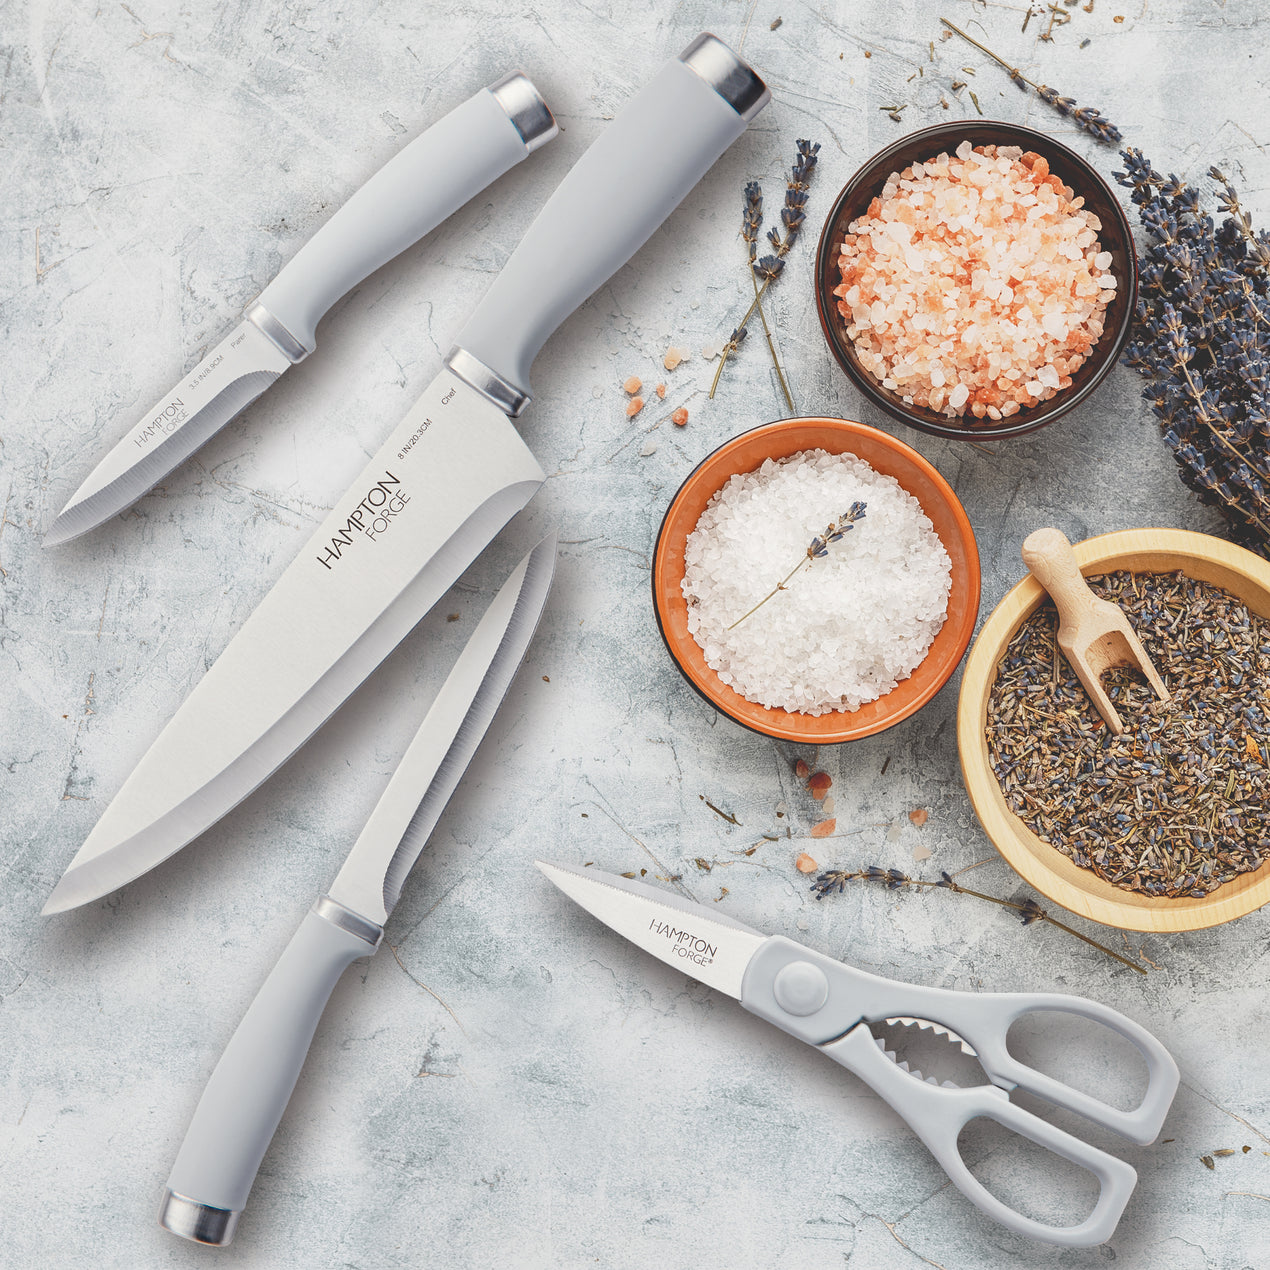 Cuisinart 15 Piece Knife Block Set & Reviews